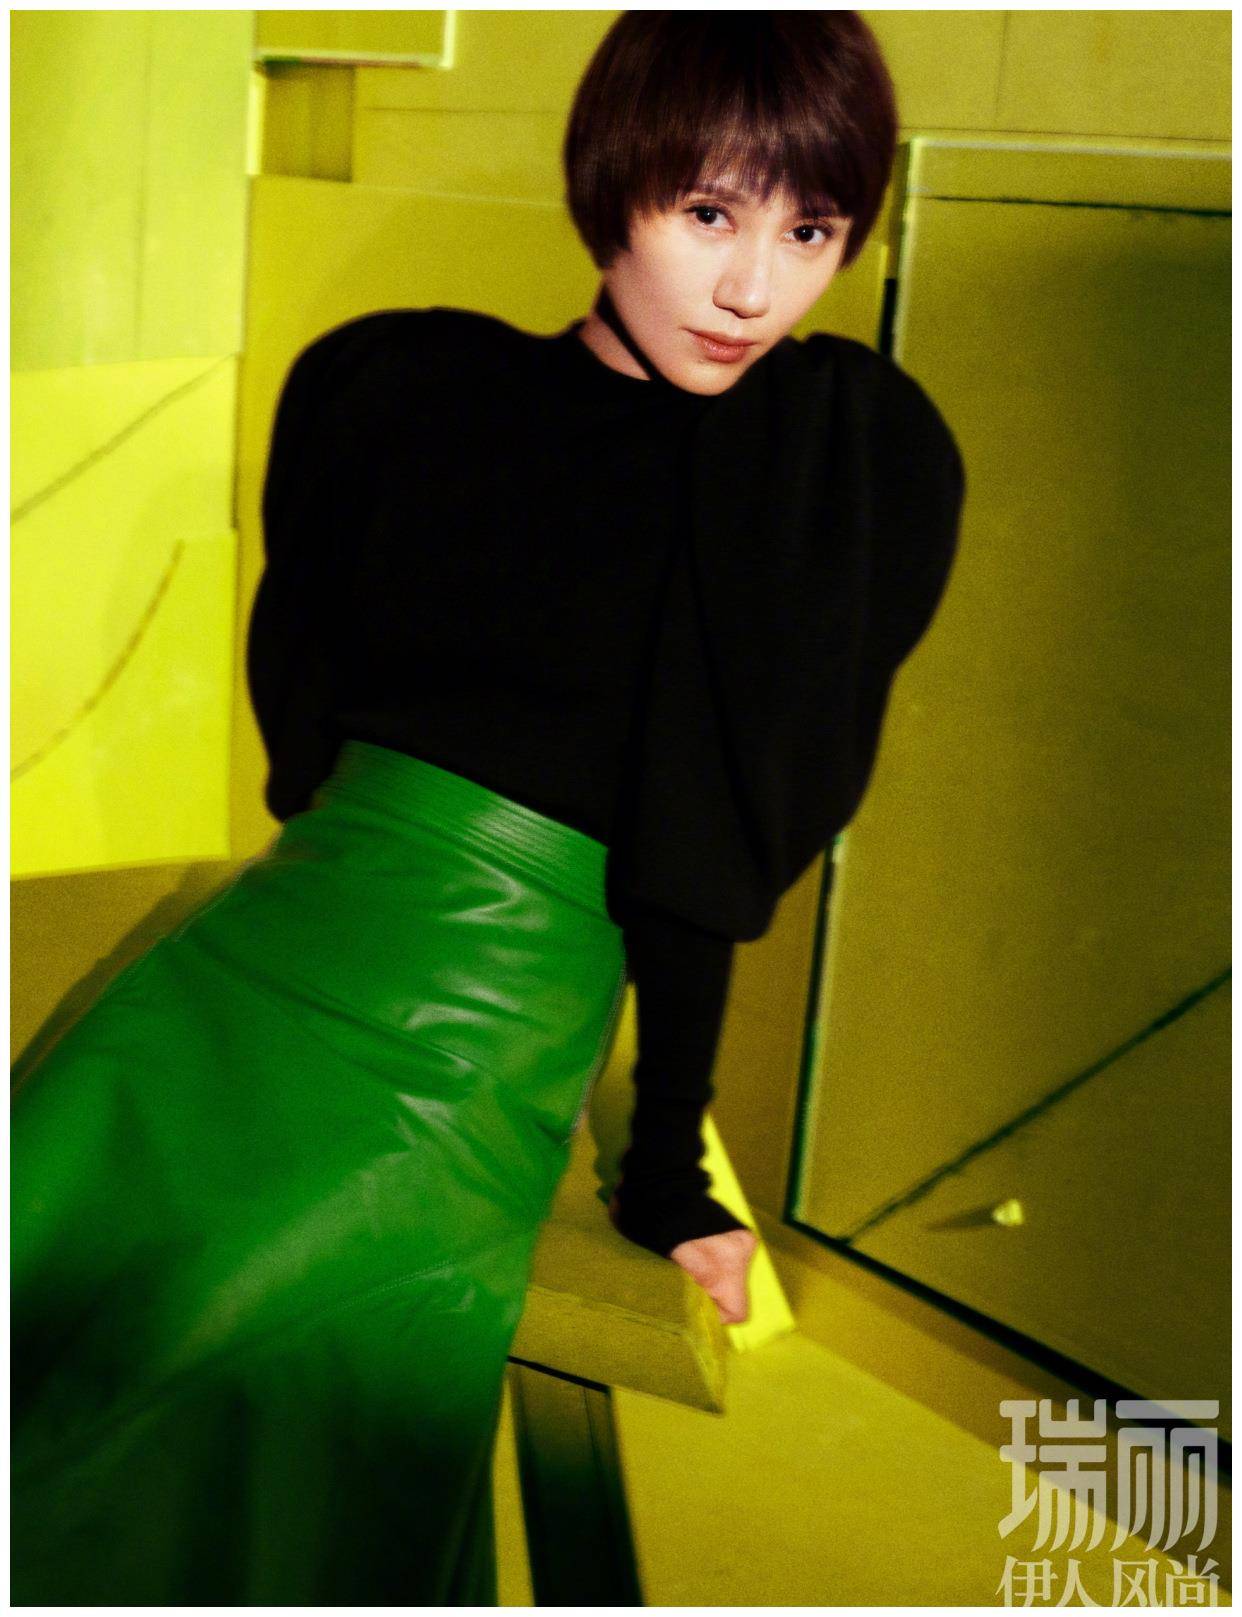 原创袁泉终于突破自我黑色廓形毛衣配森林绿皮裙42岁最美的模样